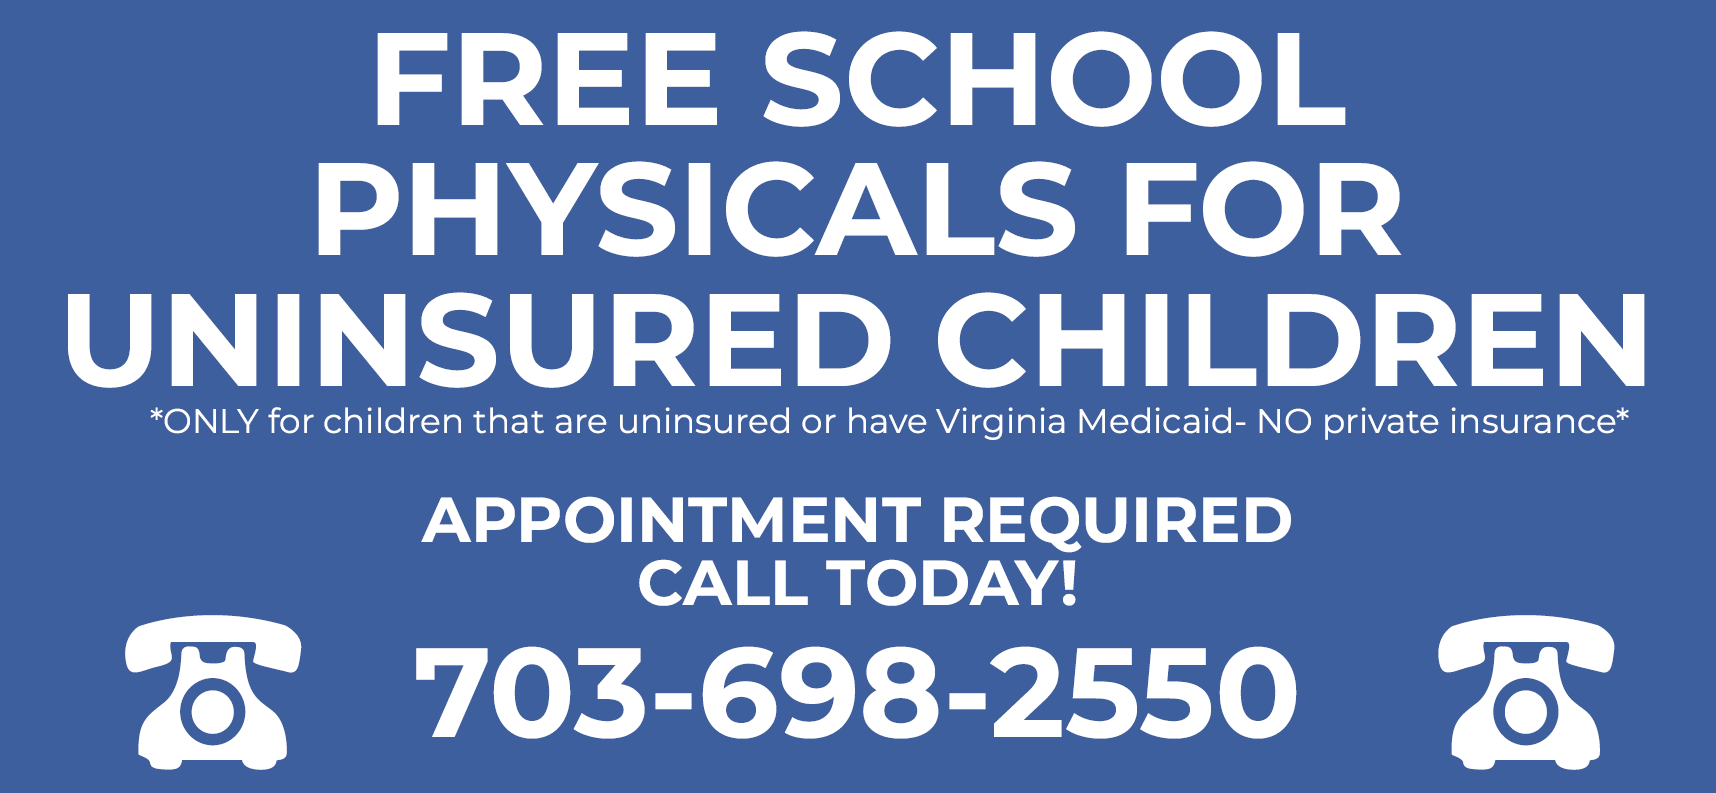 Free School Physicals for Uninsured Children